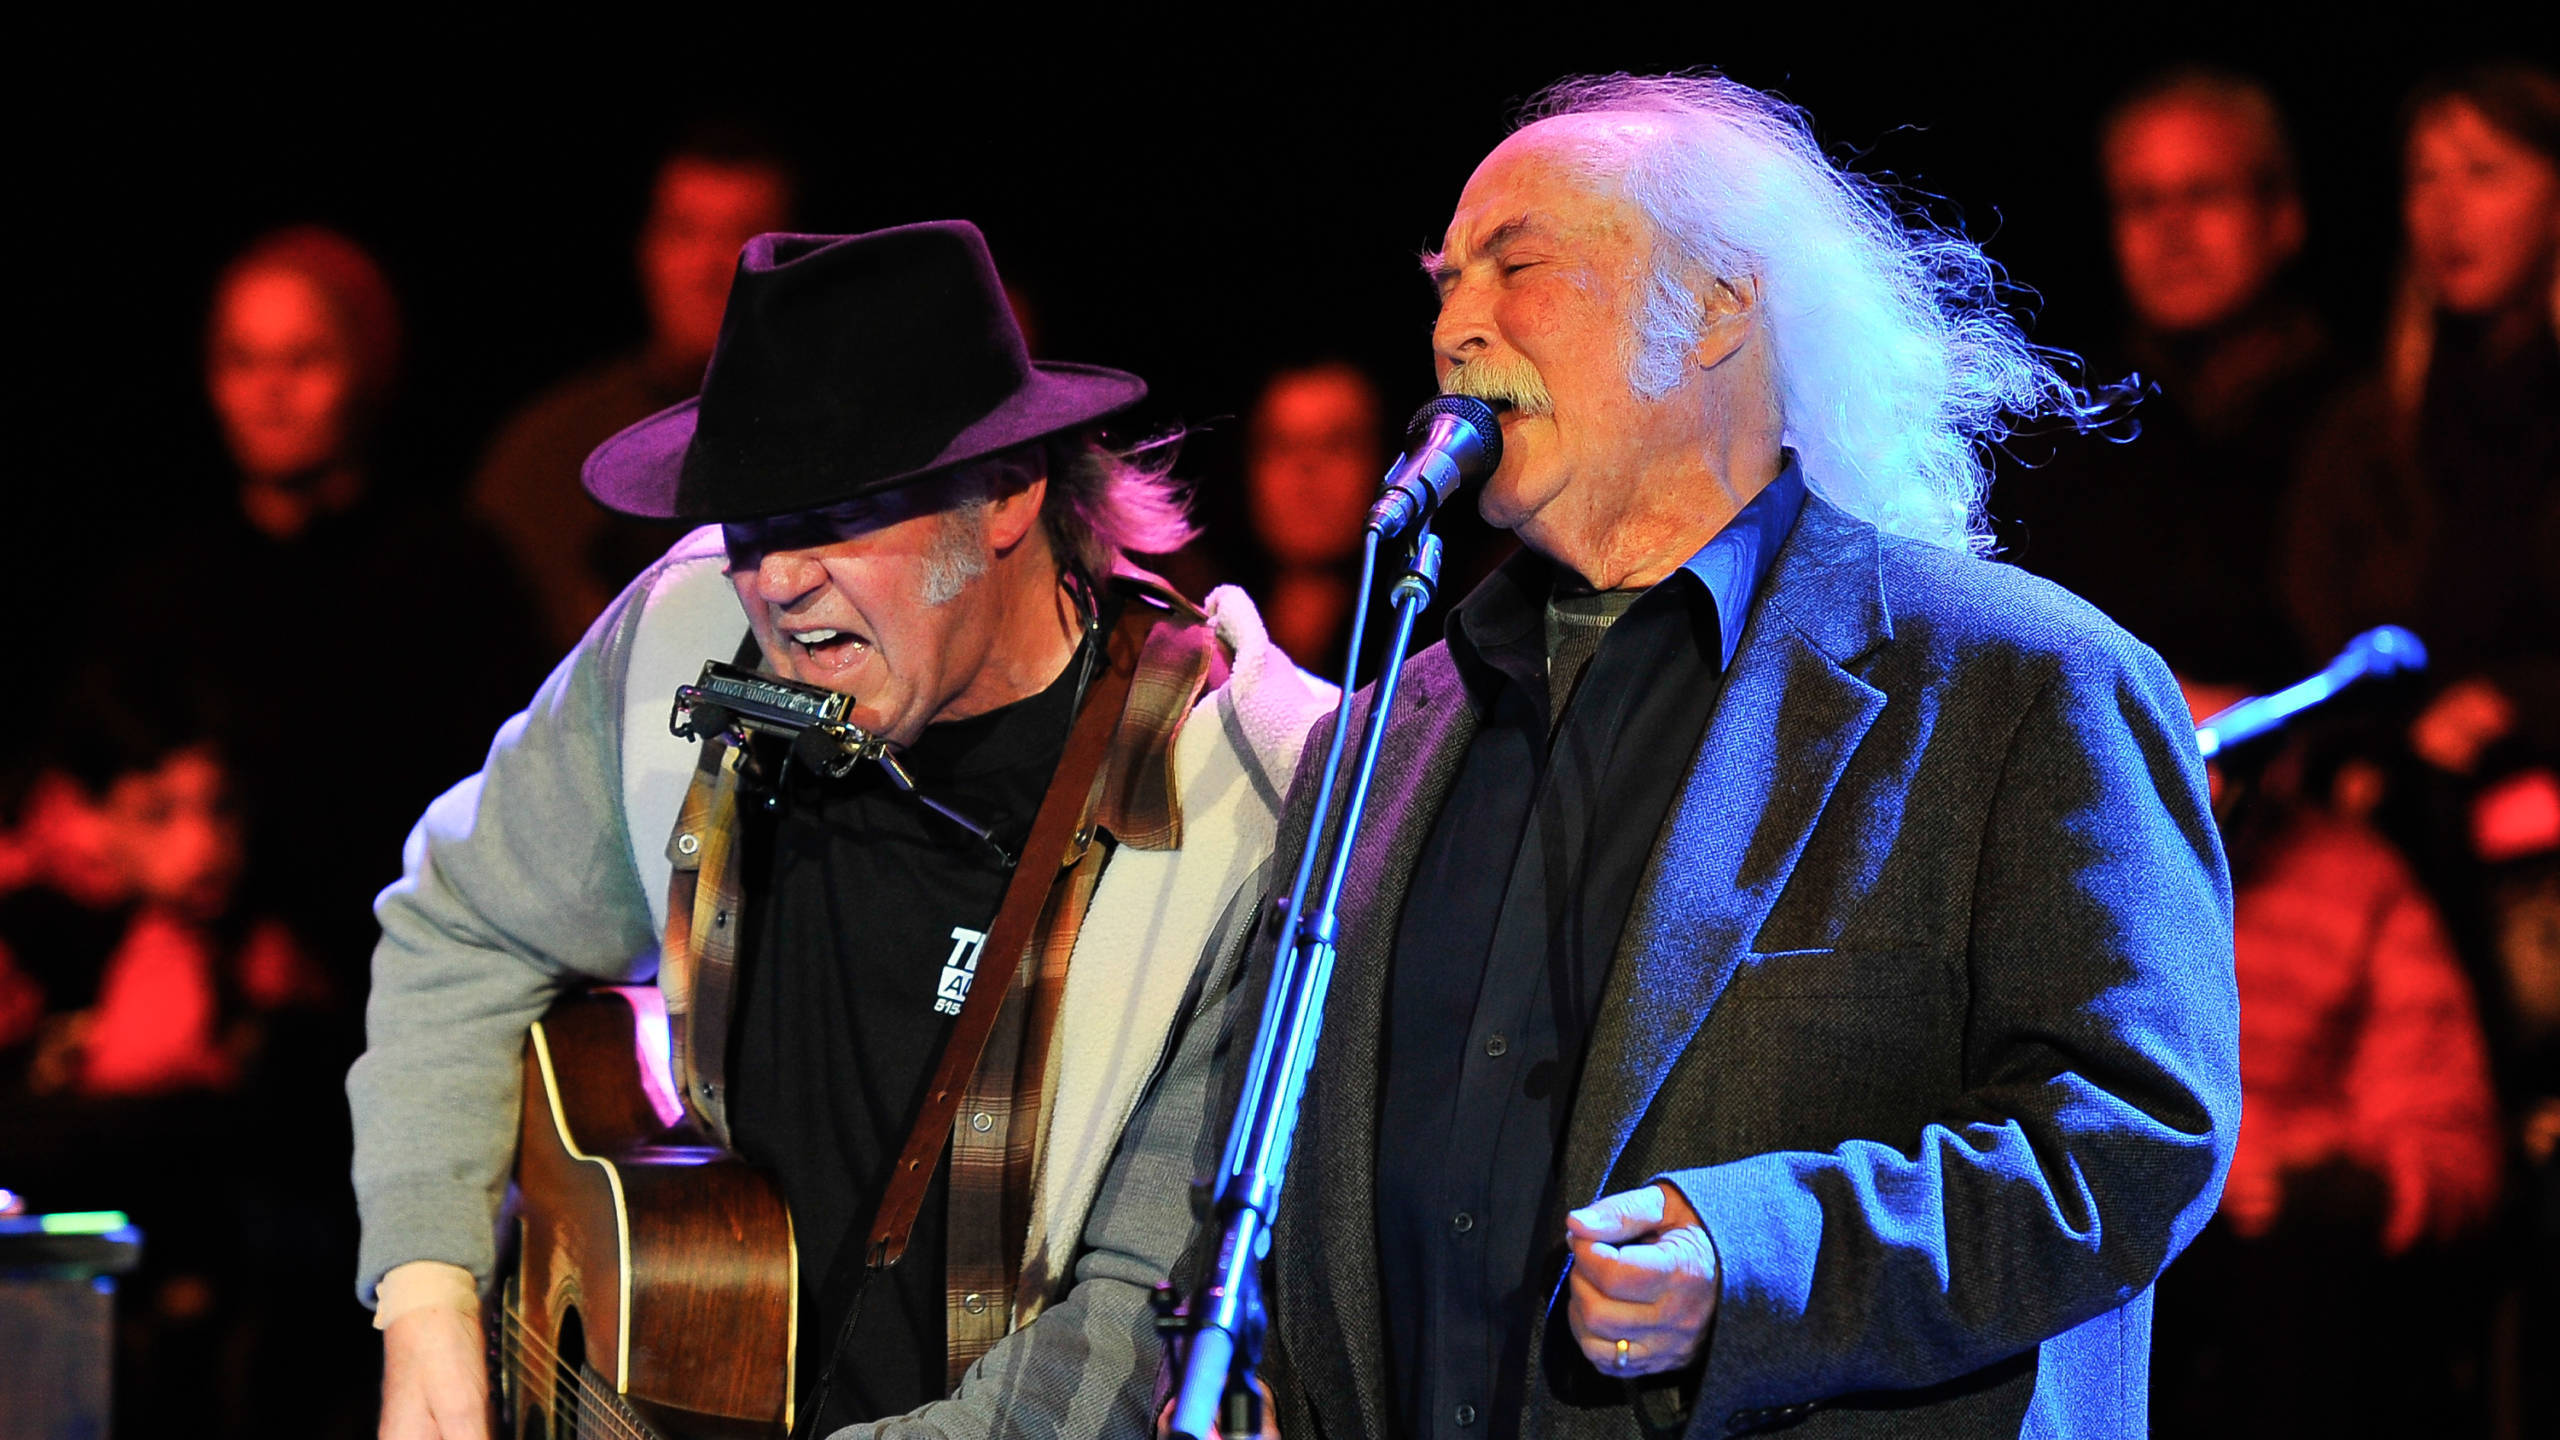 Verbunden durch Musik und gemeinsame Erfahrungen: Neil Young und David Crosby